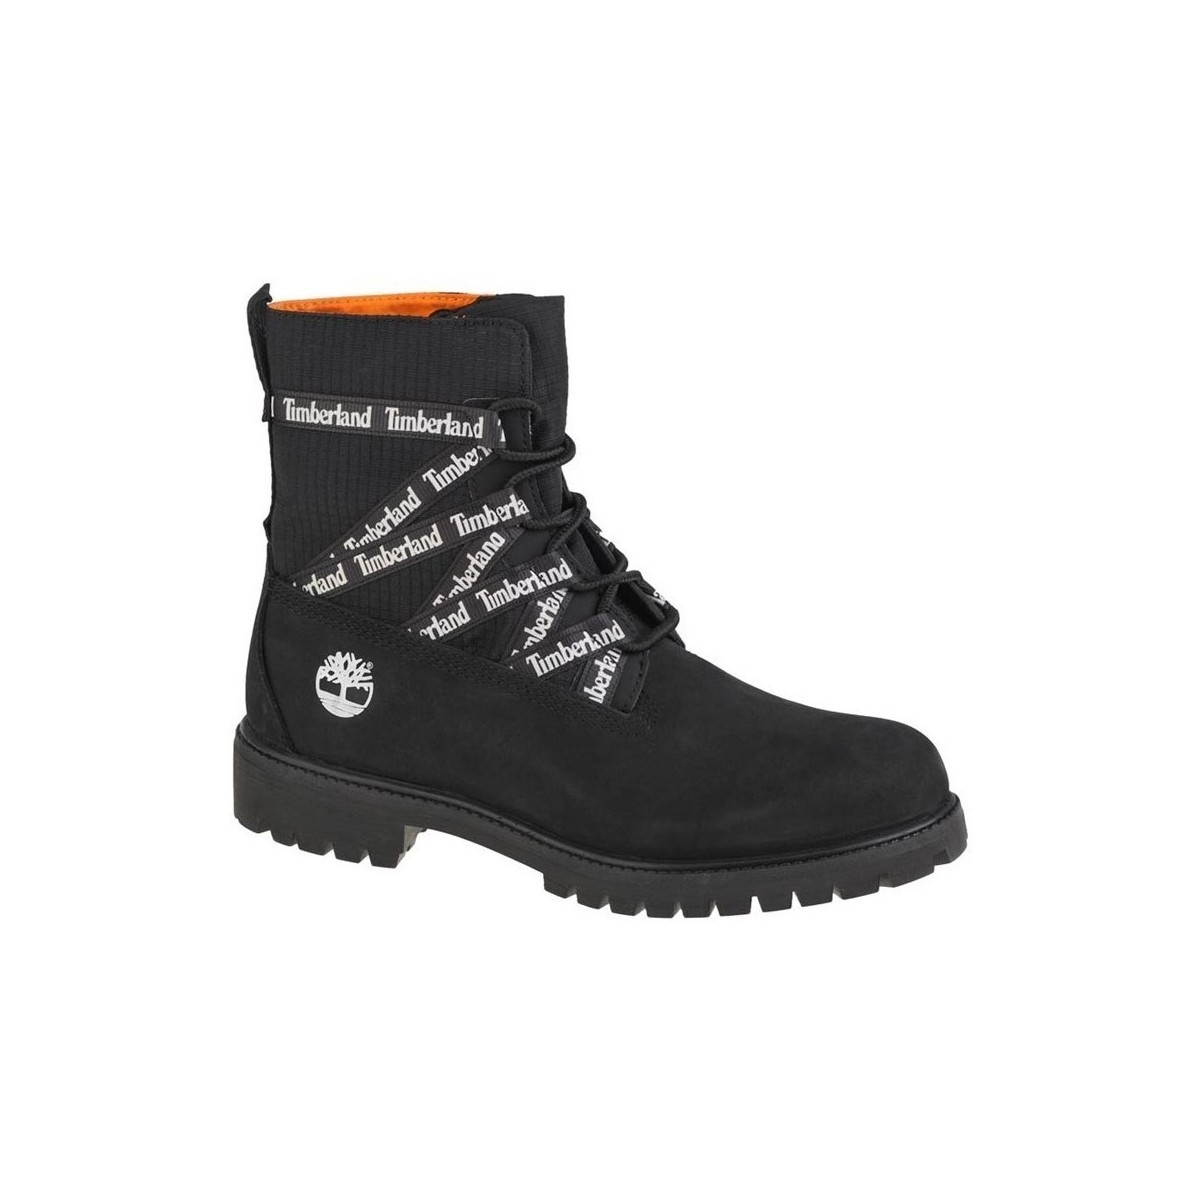 Schuhe Herren Sneaker High Timberland 6 IN Premium Boot Schwarz